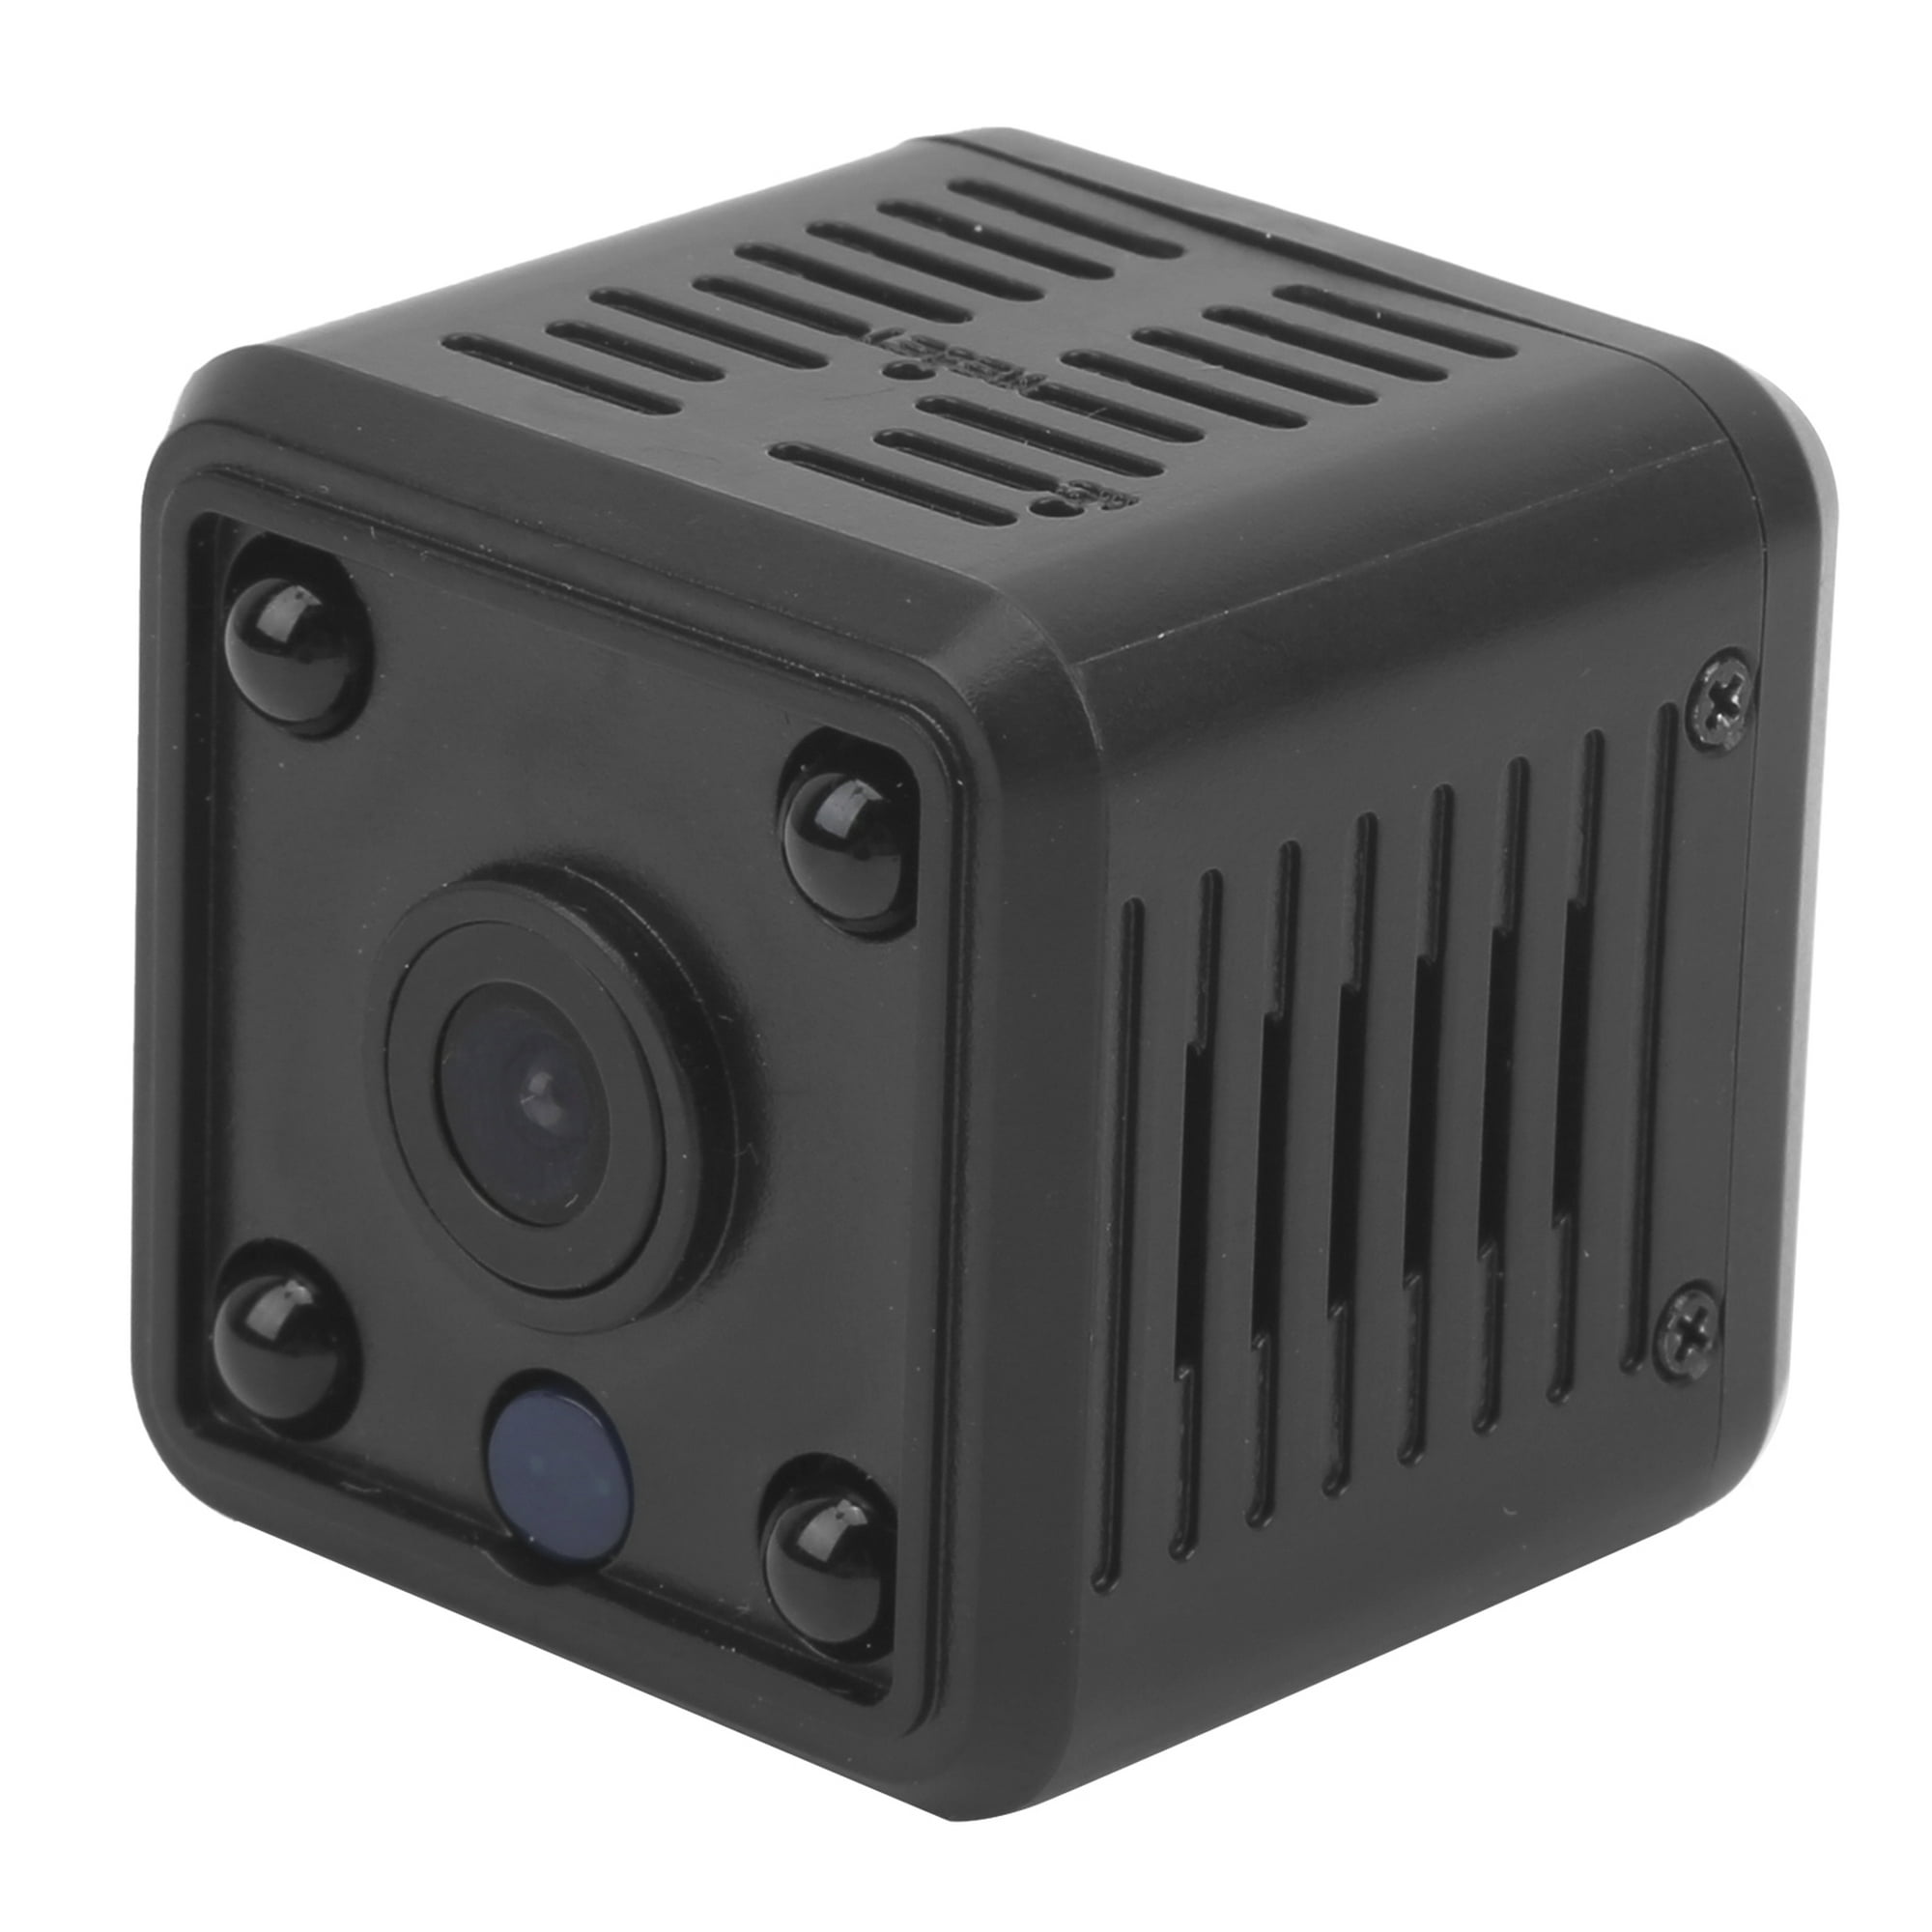 Mini cámara 4K cámara oculta WiFi, duración de la batería en espera de 580  días, alertas de detección de movimiento AI, visión nocturna automática